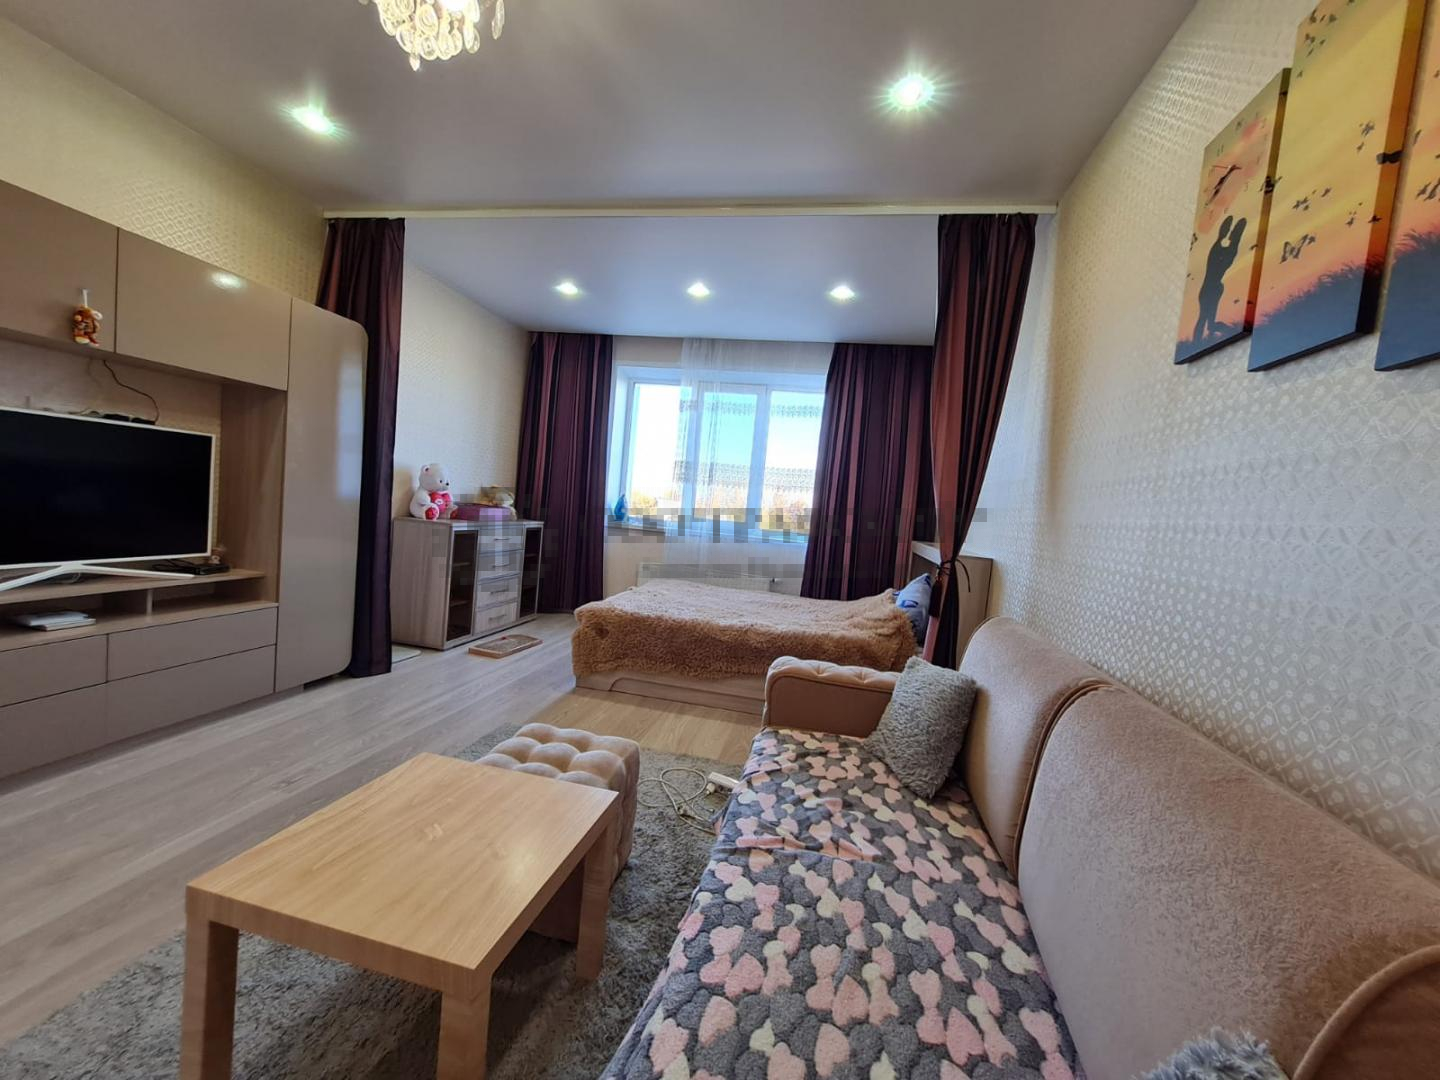 Продается уютная 1 комнатная квартира в Жилом комплексе комфорт-класса «Взлетная полоса». Квартира находится на 2м... - 18